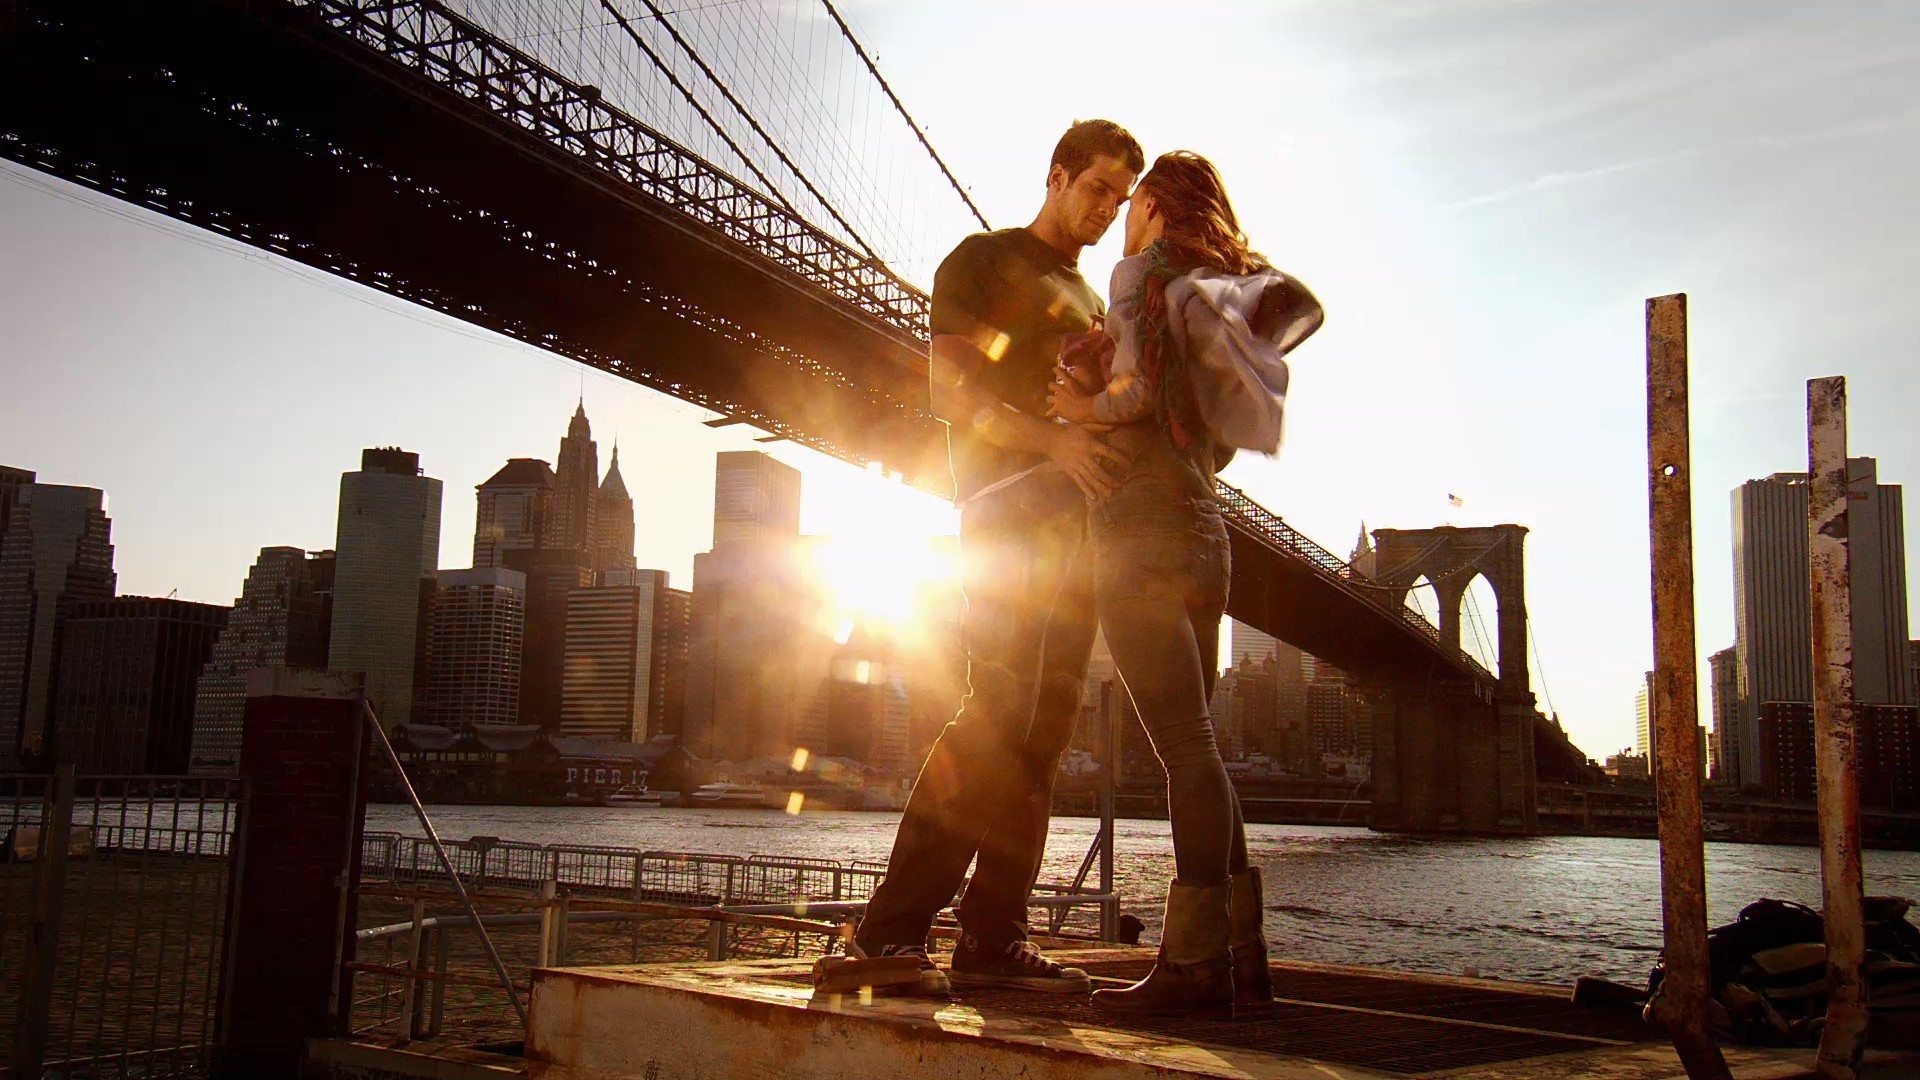 3d обои Девушка в сапогах и парень в кроссовках обнимаются в лучах заката на фоне manhattan bridge / манхэттенского моста в Нью-Йорк / New York  солнце # 81649